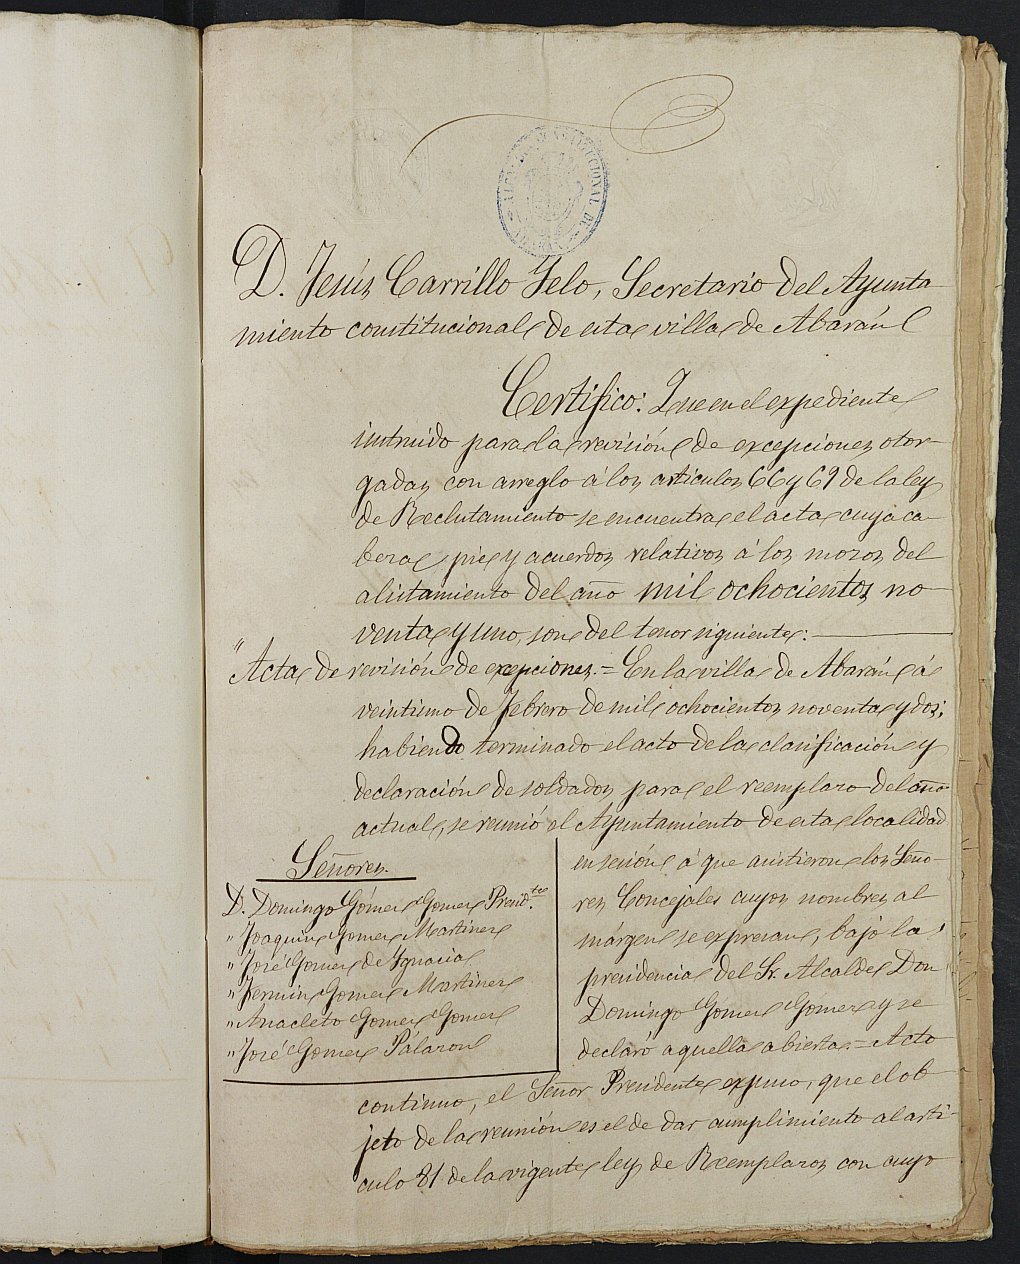 Copia certificada del expediente general de Quintas del Ayuntamiento de Abarán del reemplazo de 1891.